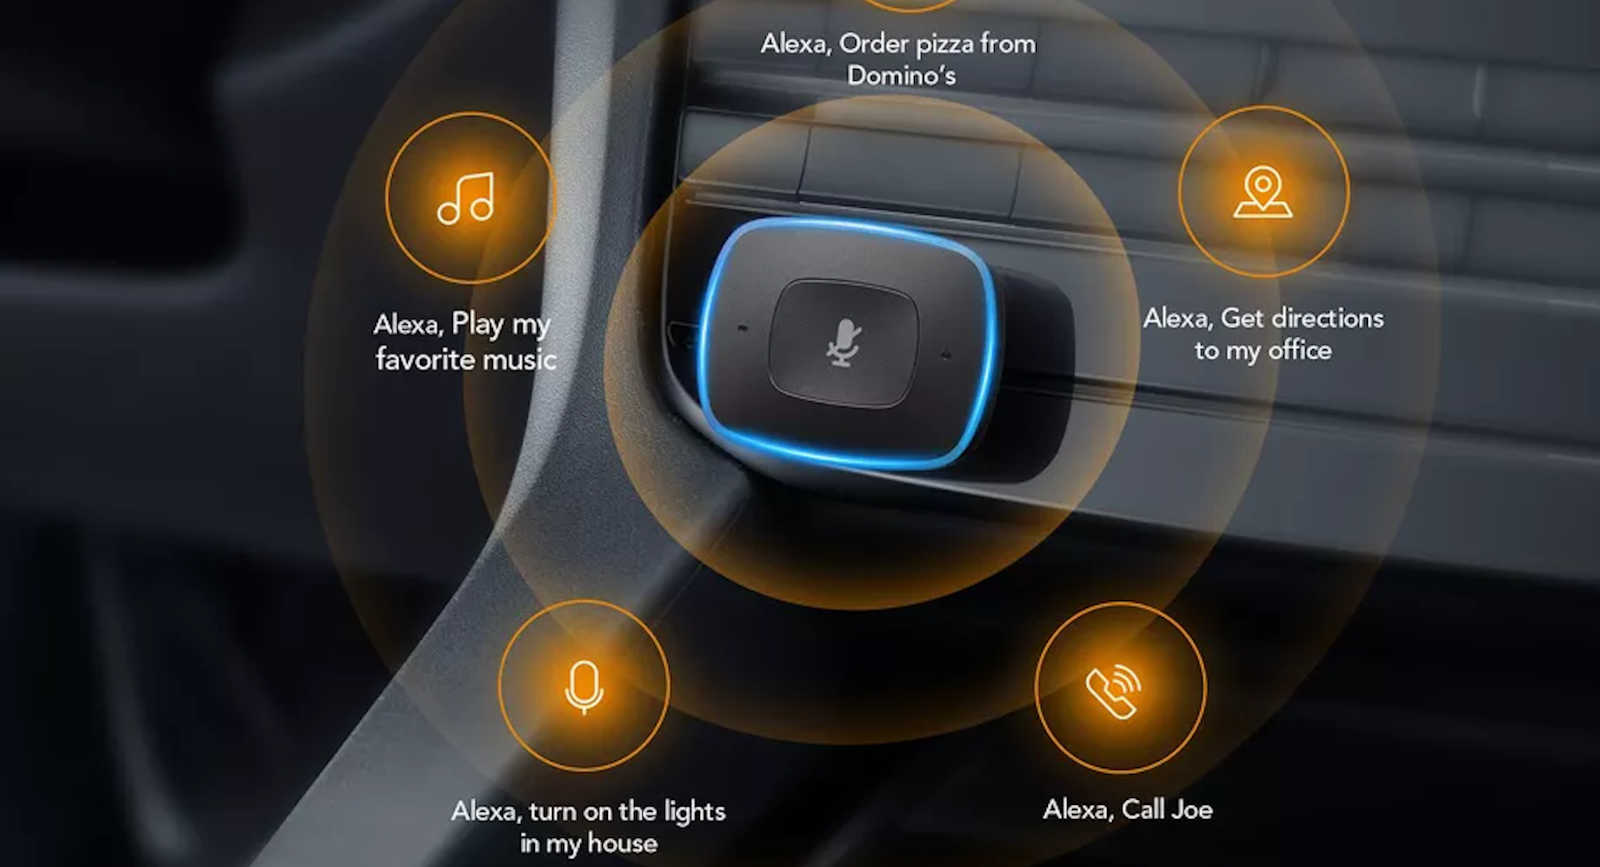 Berita, Anker Road Viva: Trik Memasang Amazon Alexa di Mobil Kita, Cukup Murah Lho